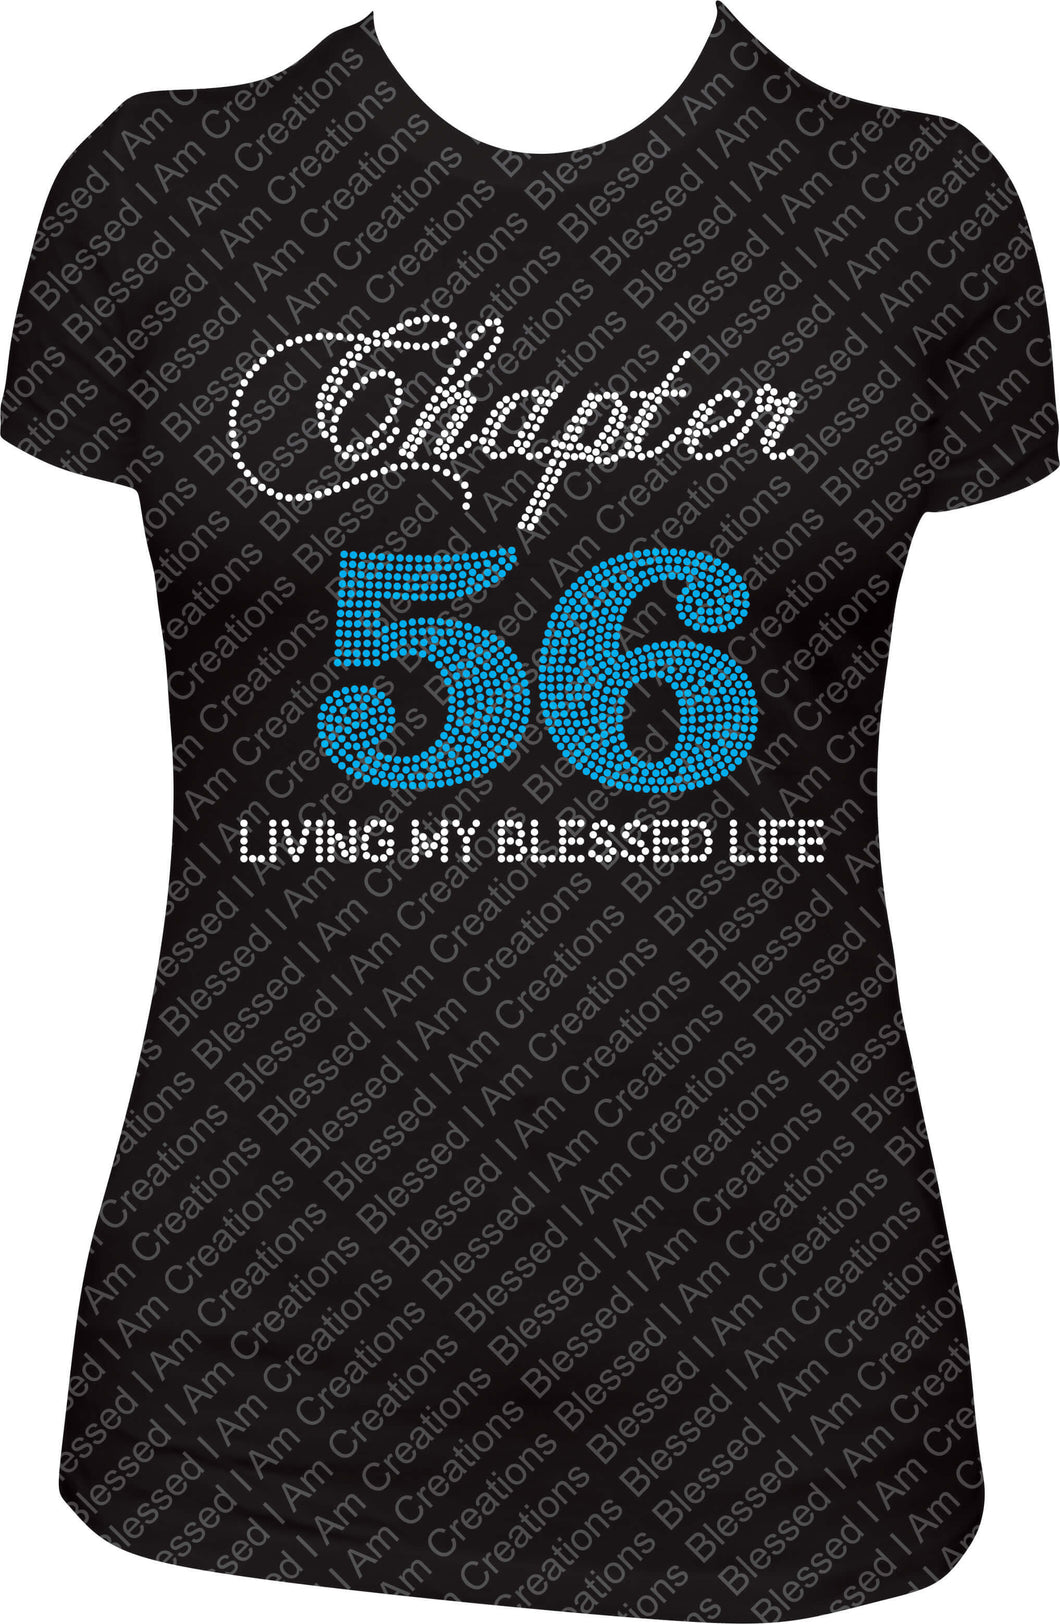 Chapter 56 Rhinestone Shirt, Ladies Birthday Shirt, Chapter Birthday Shirt, Living my blessed life Shirt, Bling Shirt, Rhinestone Shirt